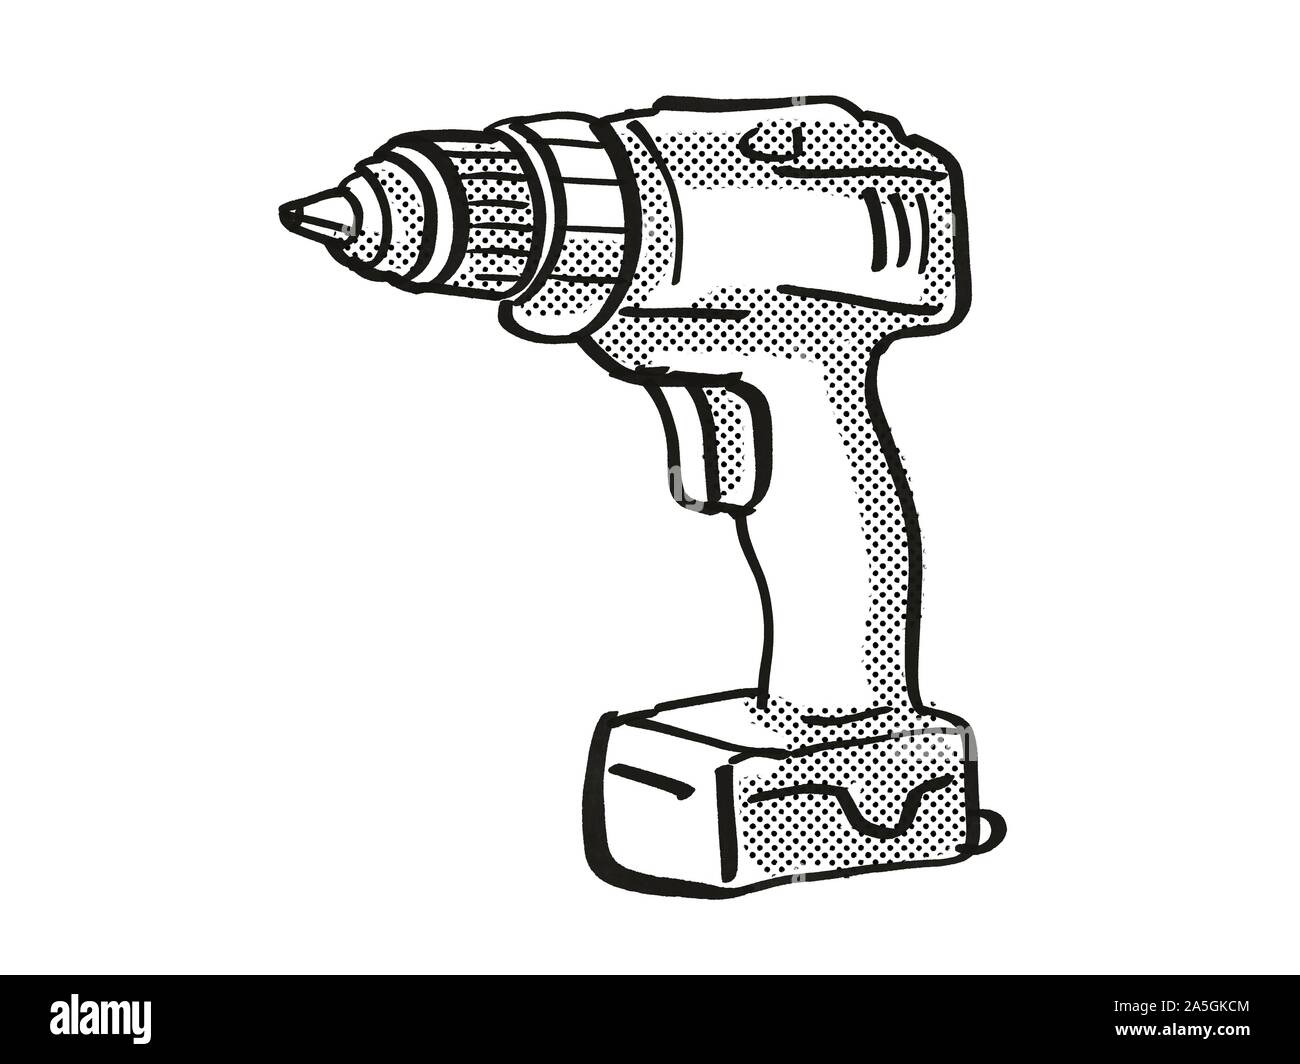 Estilo retro caricatura dibujo de un taladro de mano portátil, una  herramienta eléctrica o equipos aislados sobre fondo blanco hecho en blanco  y negro Fotografía de stock - Alamy